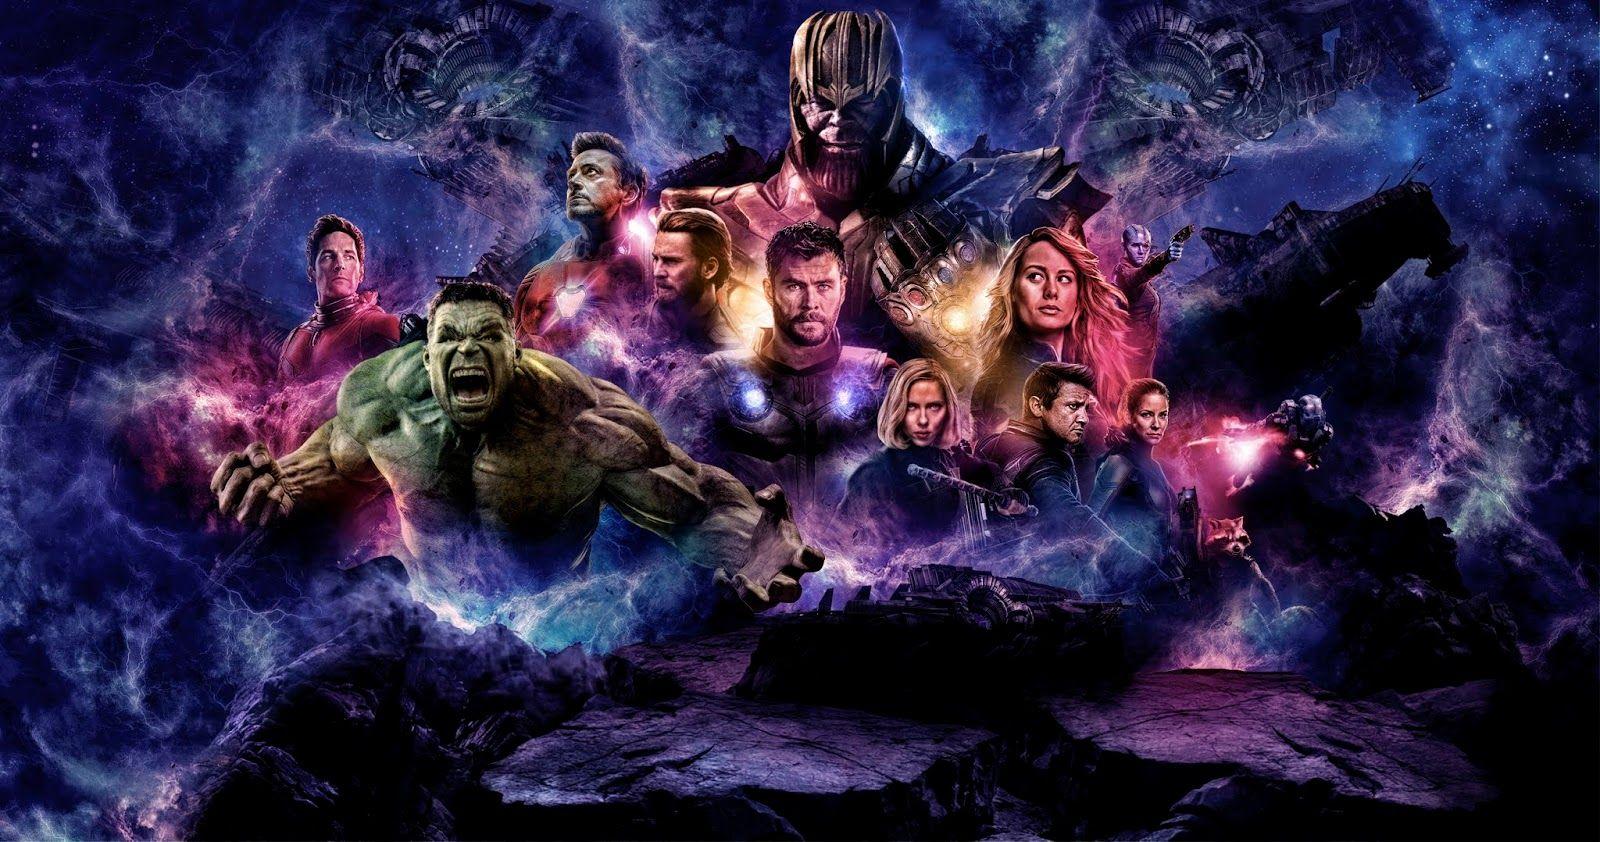 Avengers Endgame Wallpaper HD Stream 4K Online